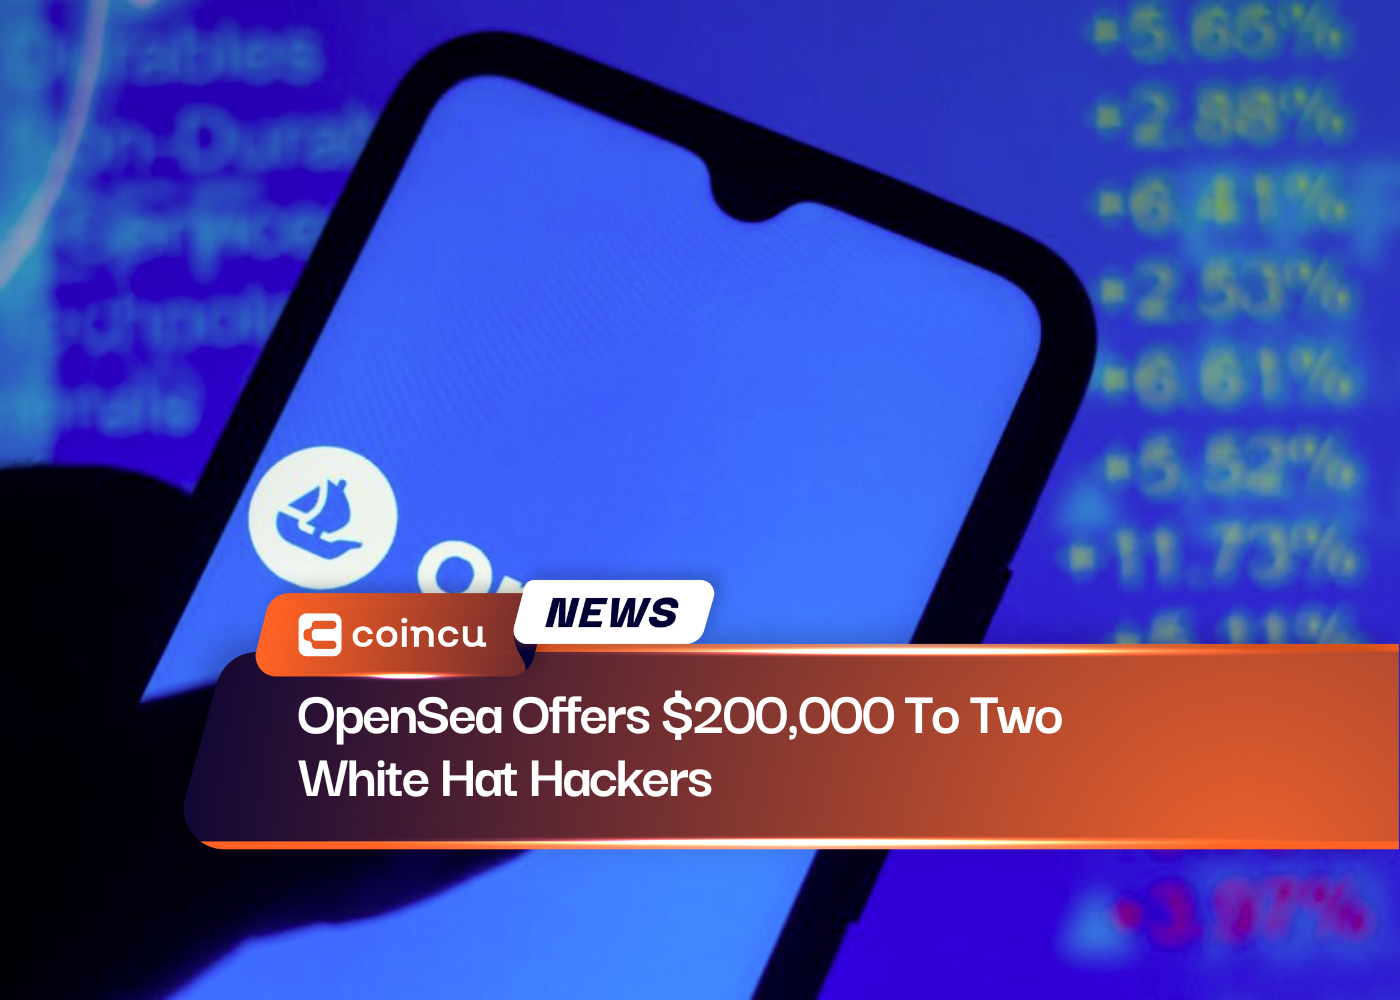 OpenSea bietet zwei White-Hat-Hackern 200,000 US-Dollar